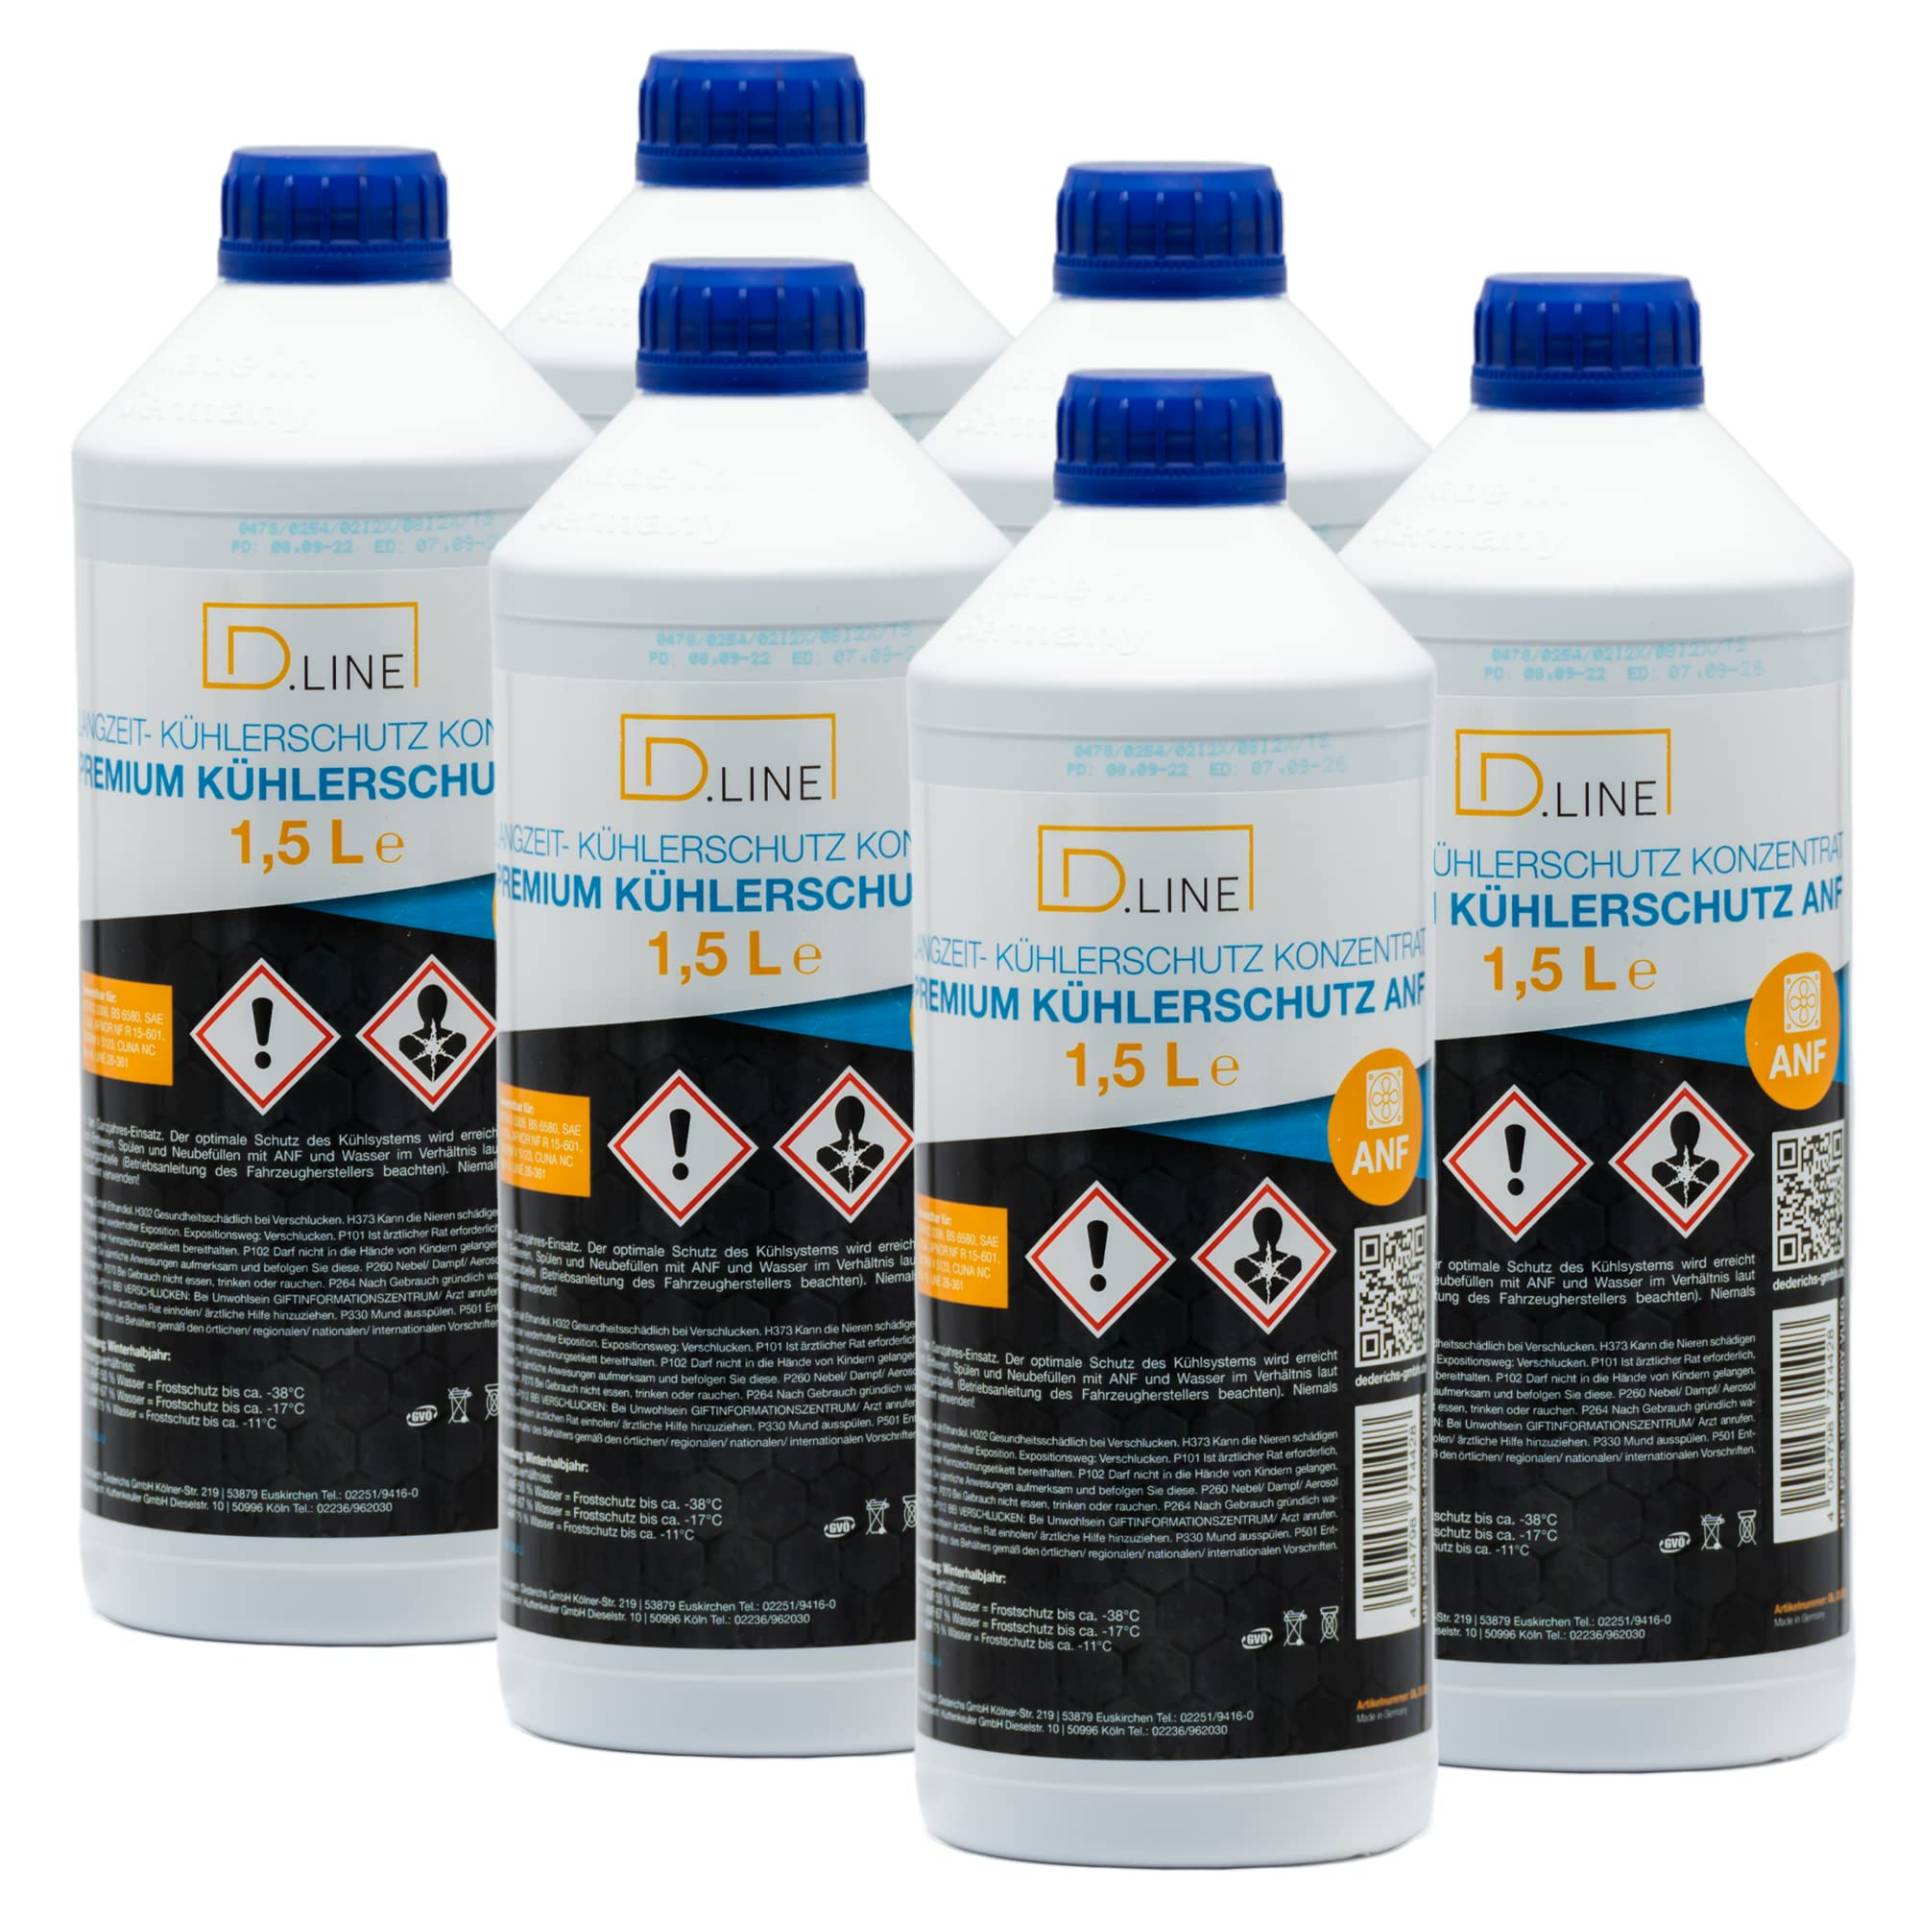 D.LINE Kühlerschutz Konzentrat ANF 40, 1,5 Liter (1) von D.LINE